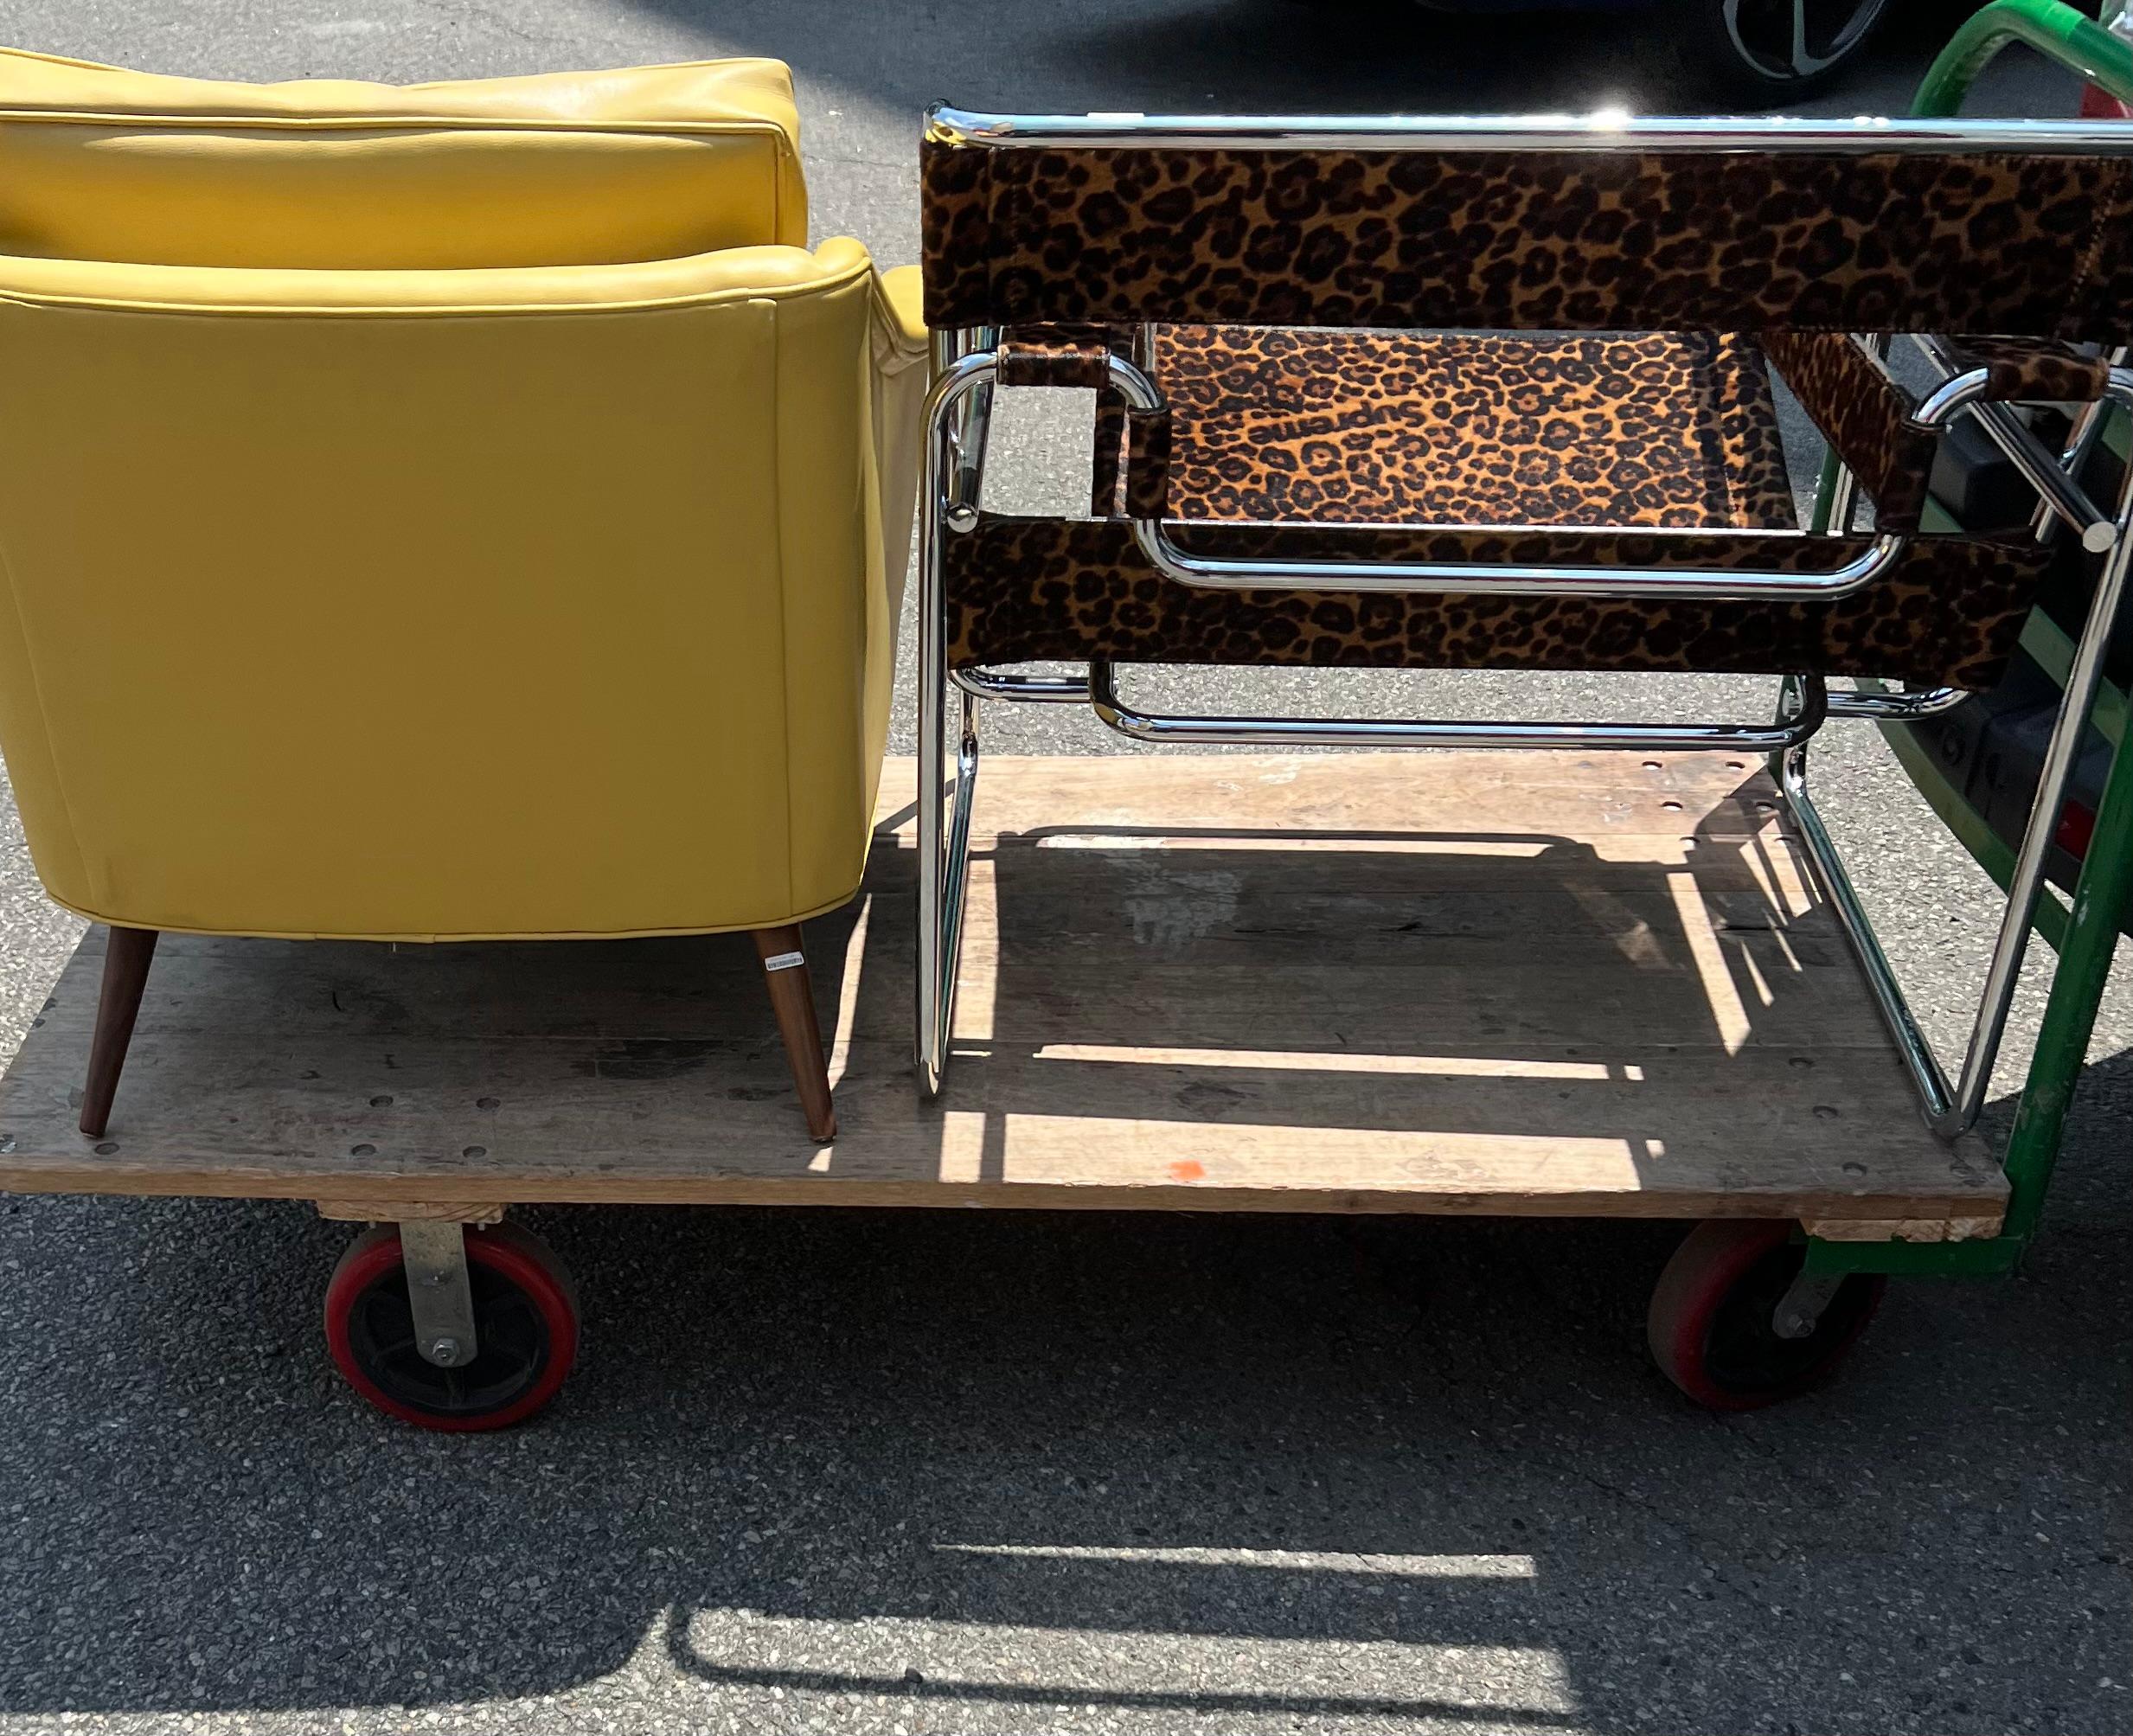 Acier inoxydable Chaise longue Wassily modèle B3 de Knoll x Supreme Leopard, Marcel Breuer, 1925, 2019